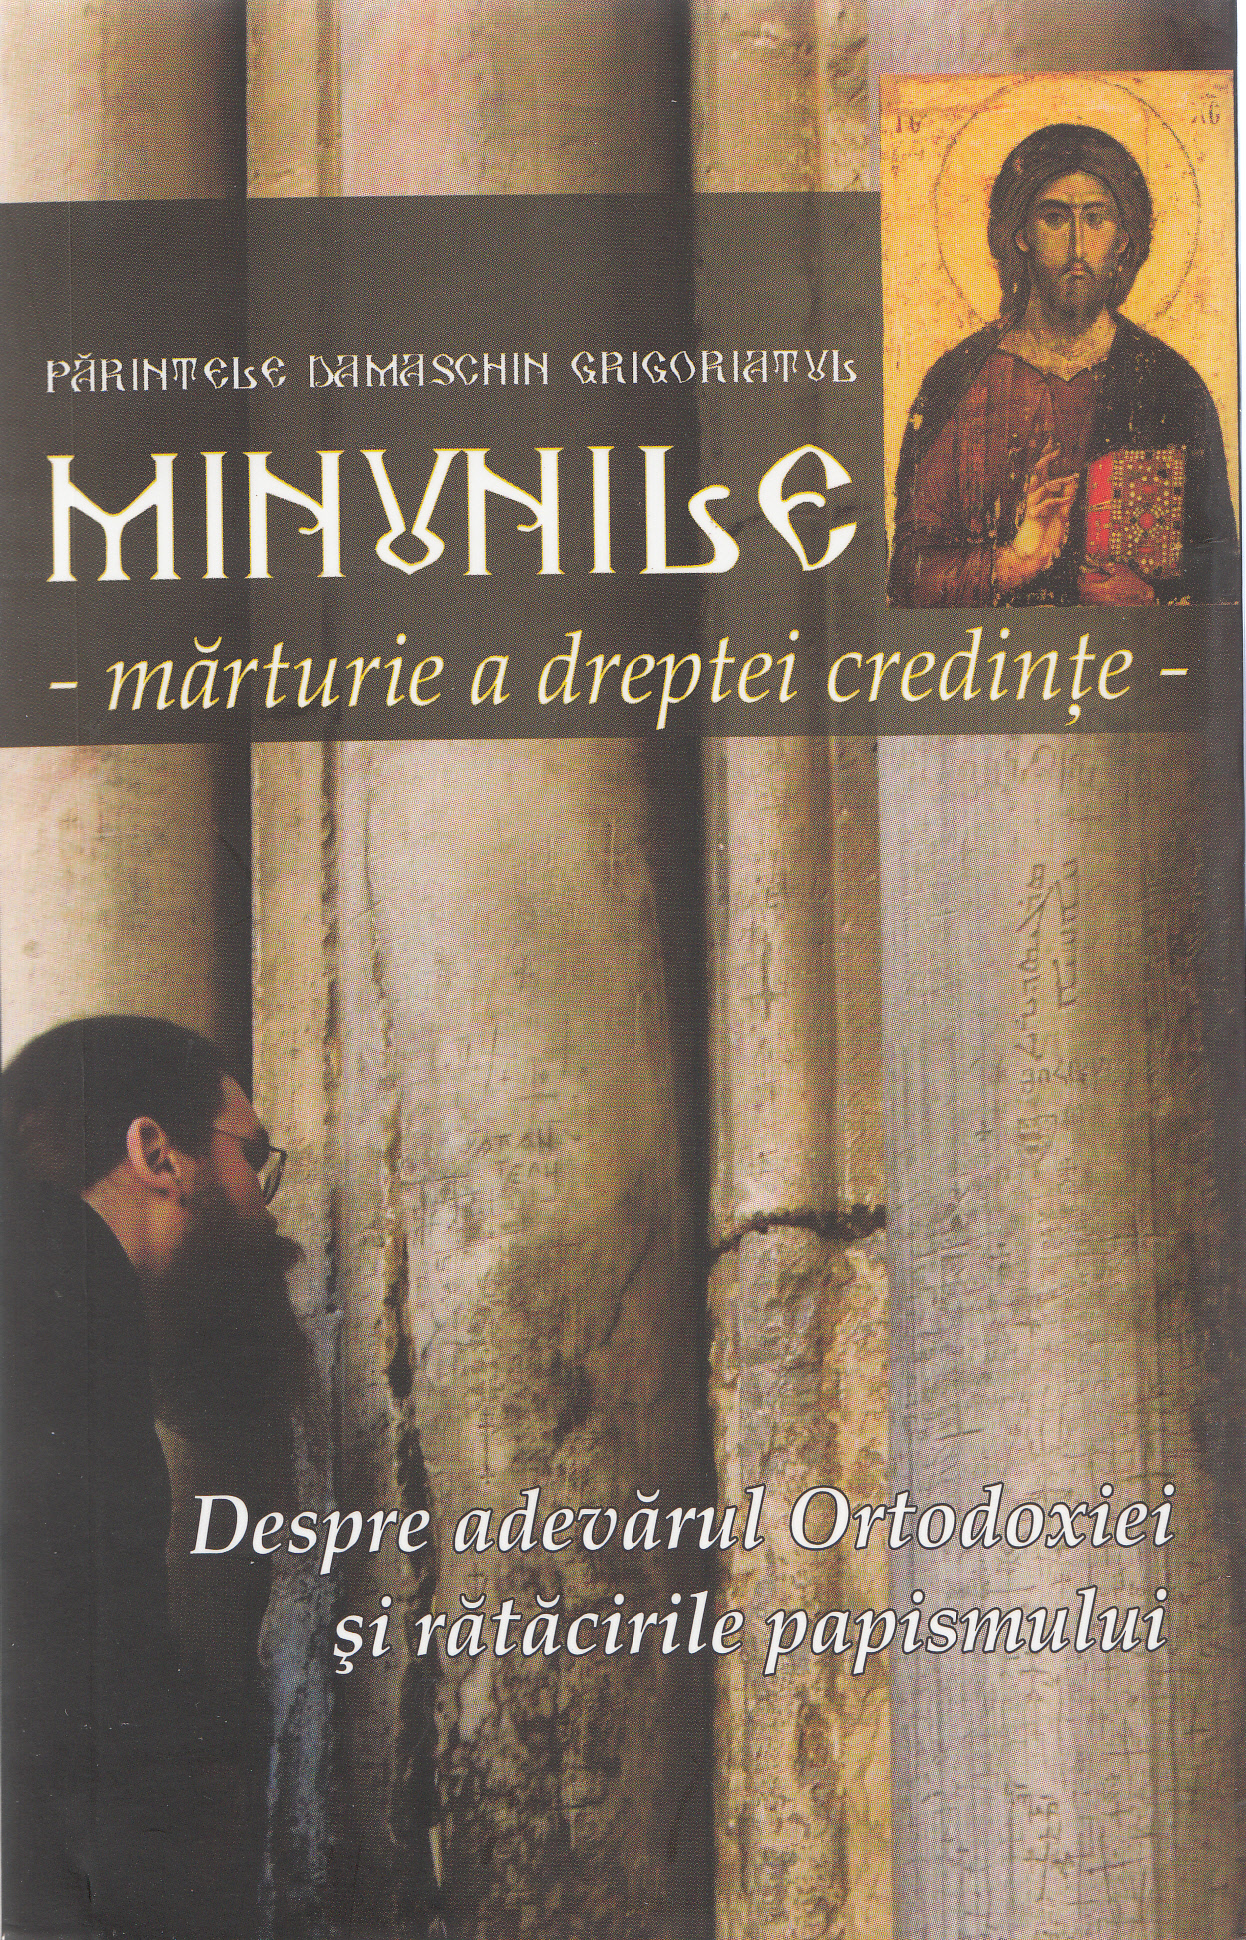 Minunile: marturie a dreptei credinte - Parintele Damaschin Grigoriatul